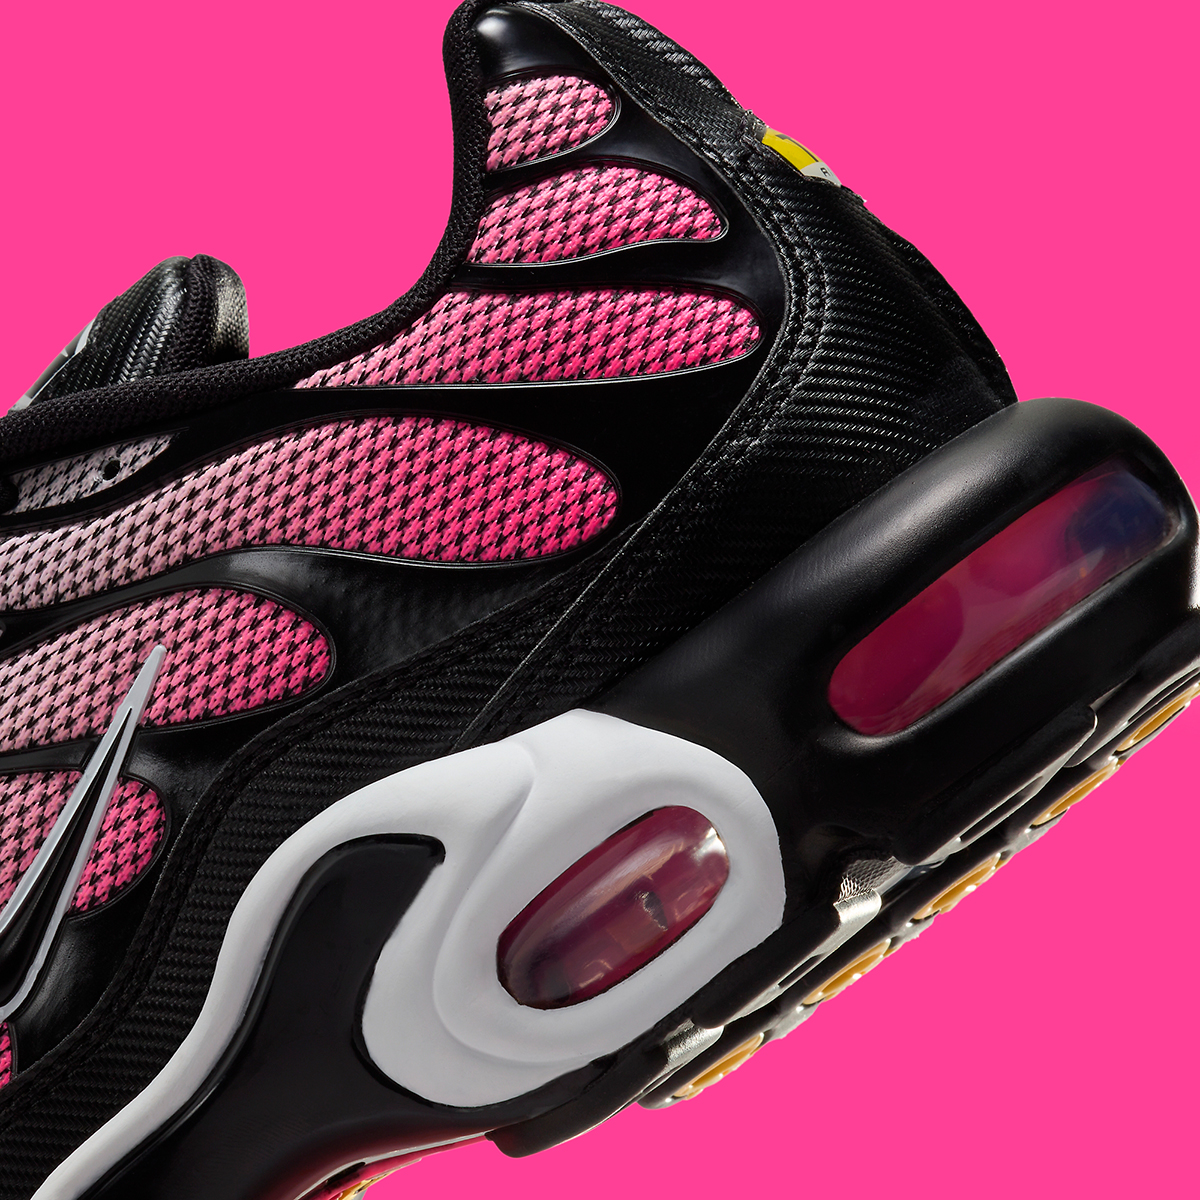 Nike Air Max Plus Pink Black Hf3837 600 3